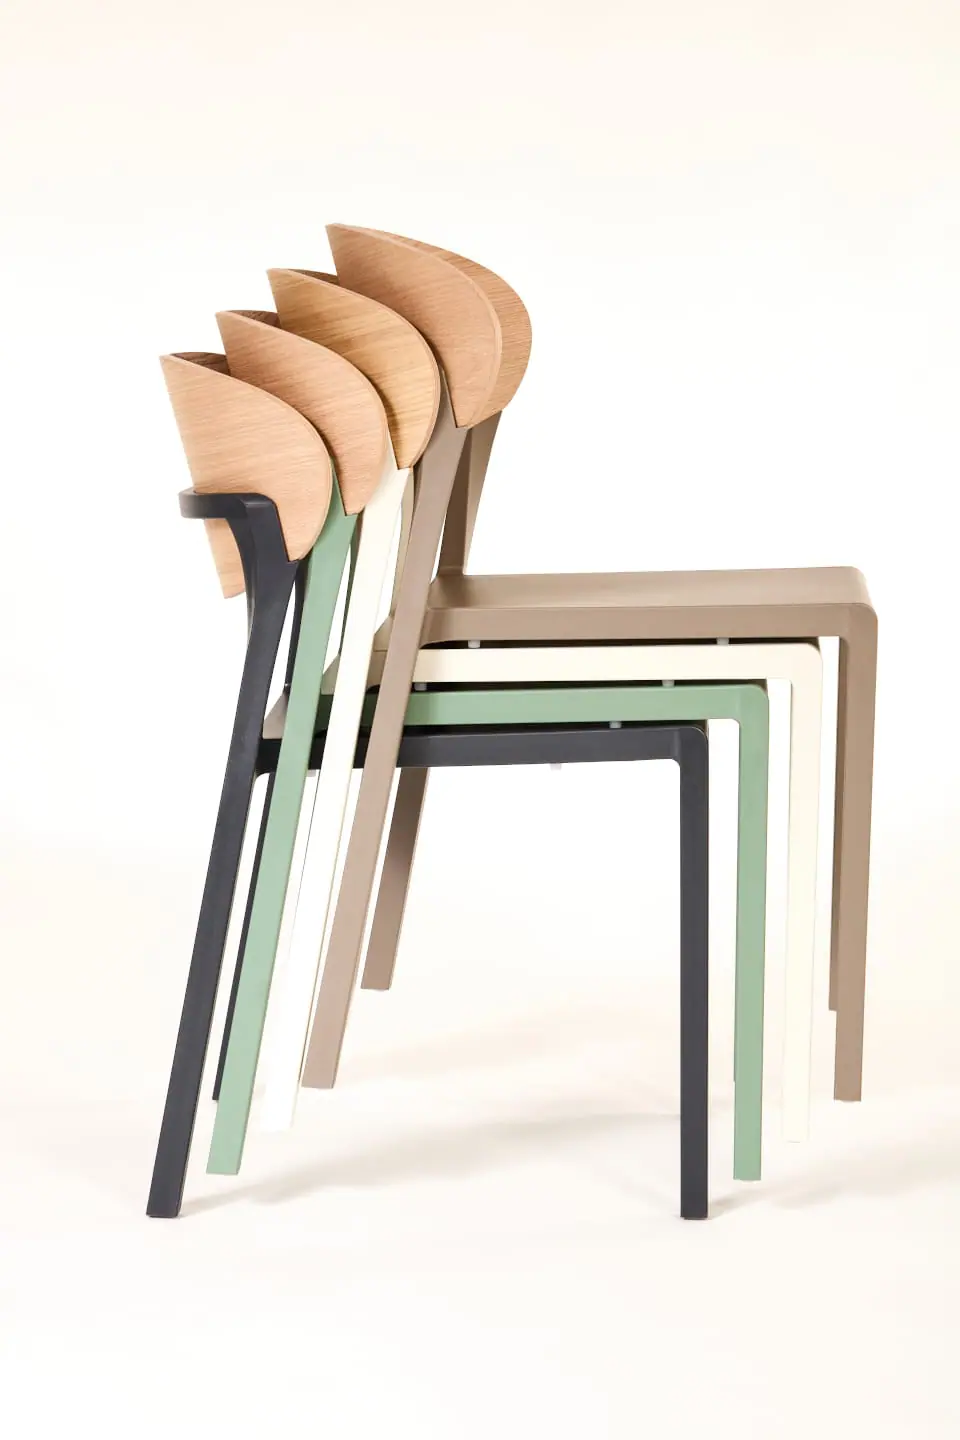 ezpeleta-bake_wood-chair010-2